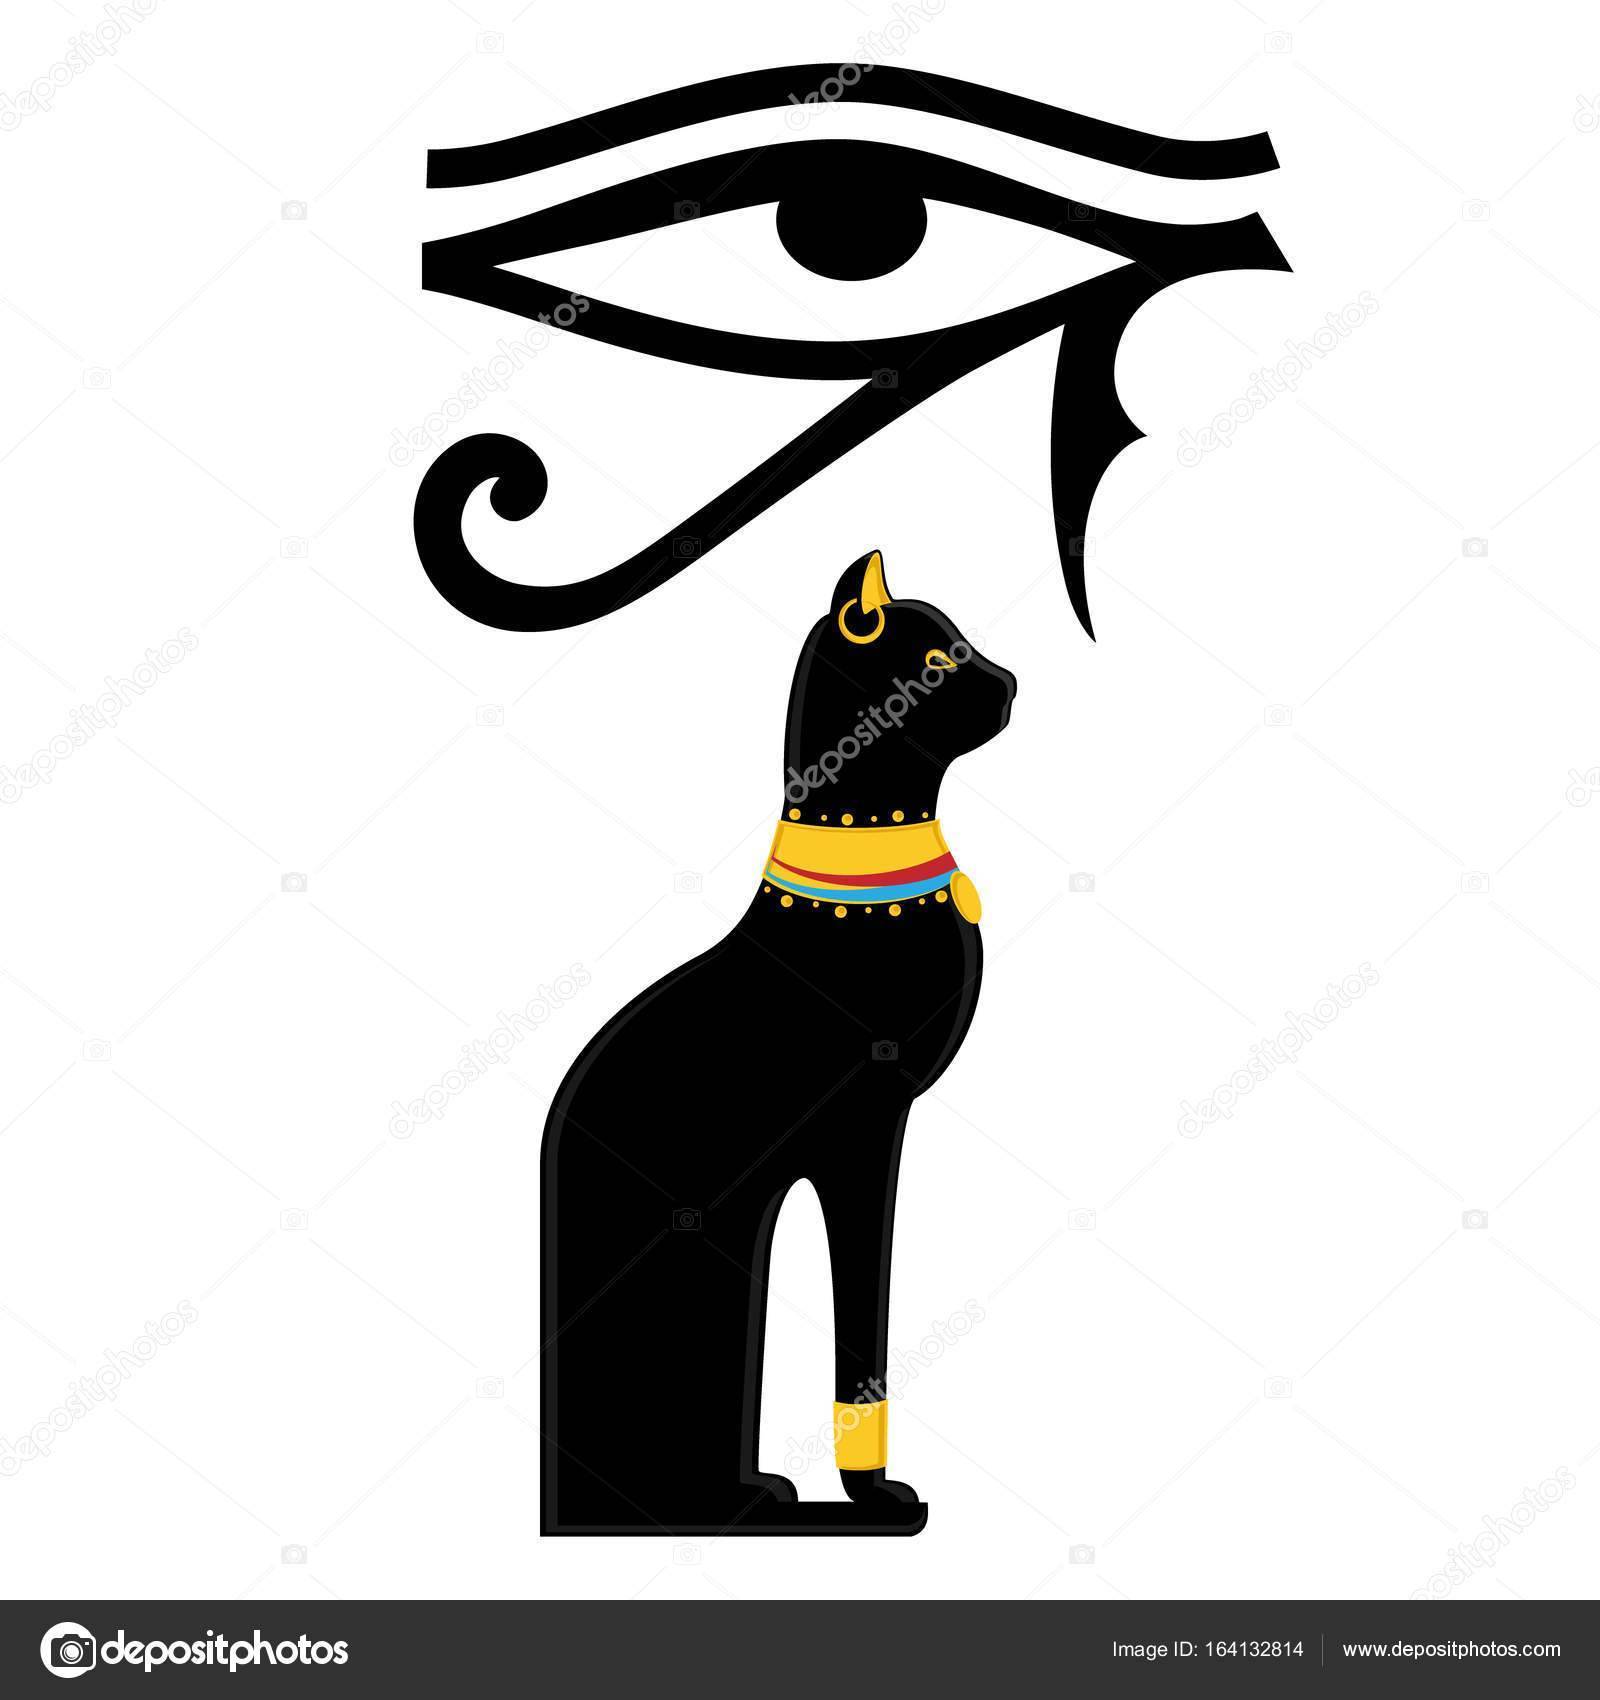 Египетские символы и знаки: значение и все, что нужно знать о них